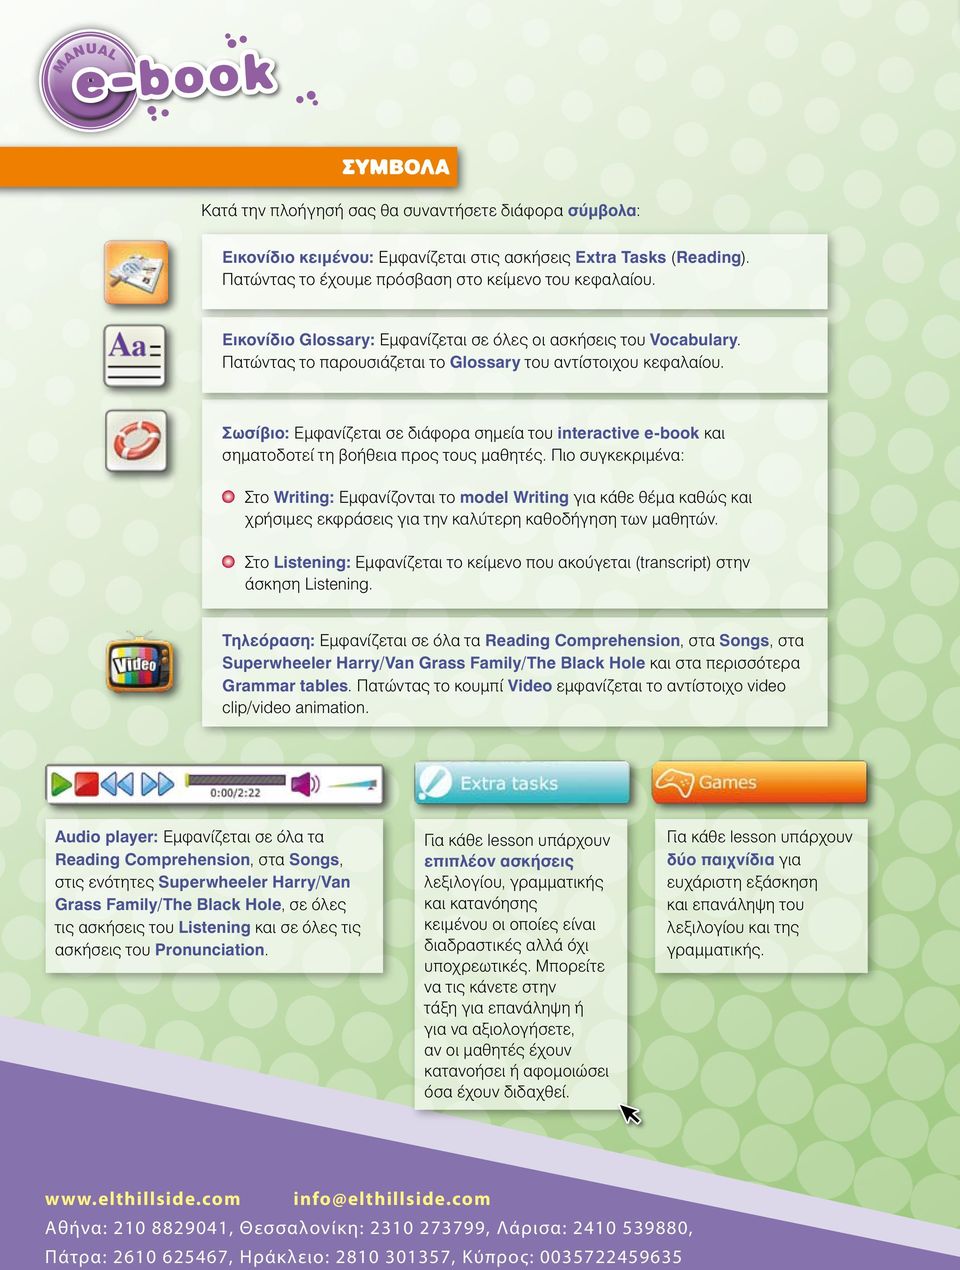 Σωσίβιο: Εμφανίζεται σε διάφορα σημεία του interactive e-book και σηματοδοτεί τη βοήθεια προς τους μαθητές.